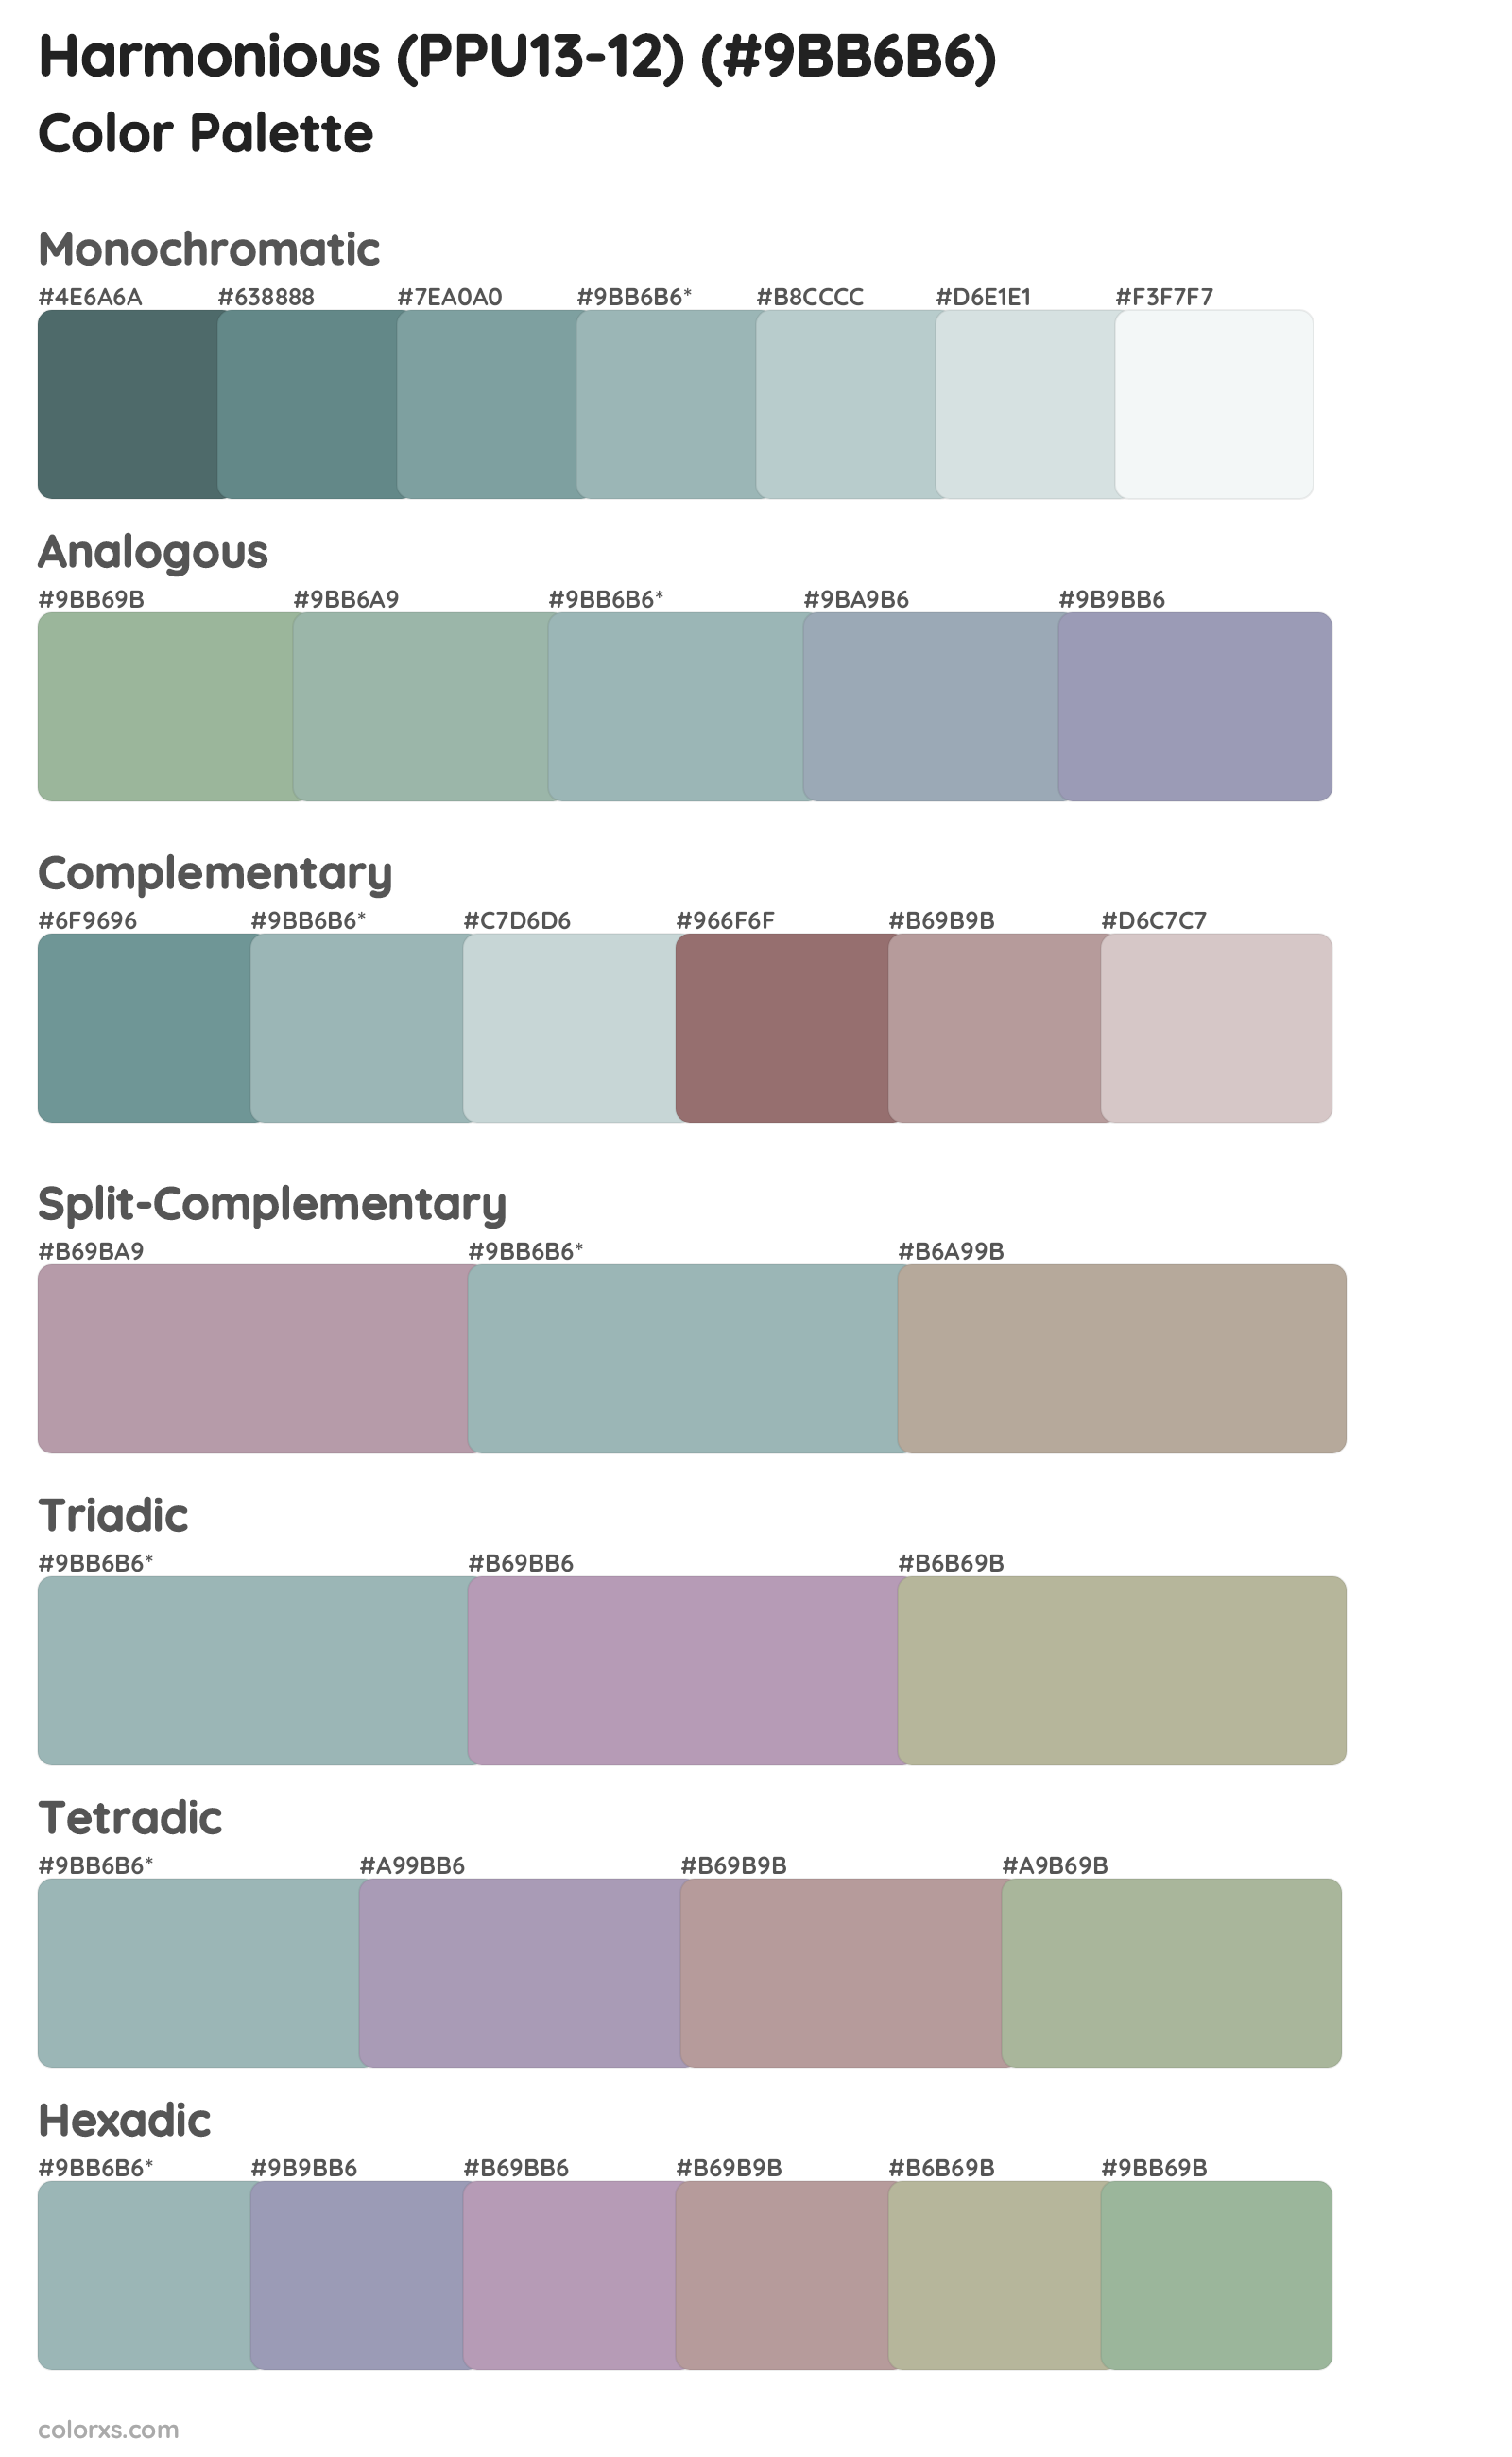 Harmonious (PPU13-12) Color Scheme Palettes